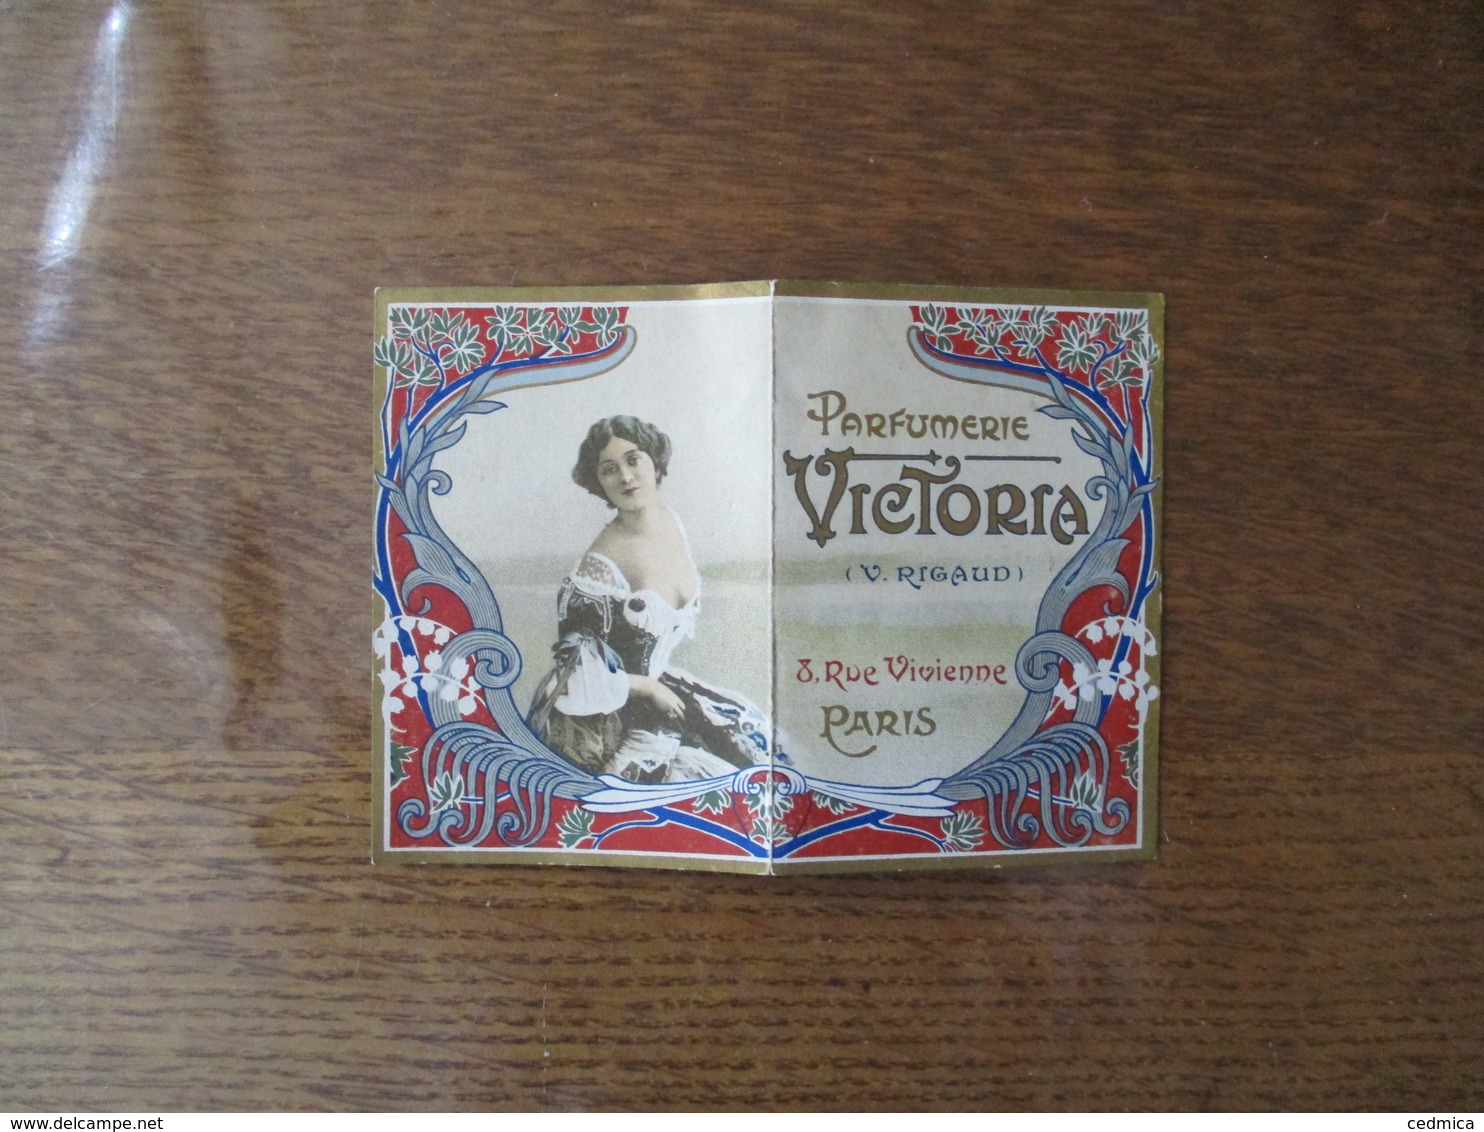 PARFUMERIE VICTORIA (V. RIGAUD) 8 RUE VIVIENNE PARIS PETIT CALENDRIER 2ème SEMESTRE 1900 - Publicités